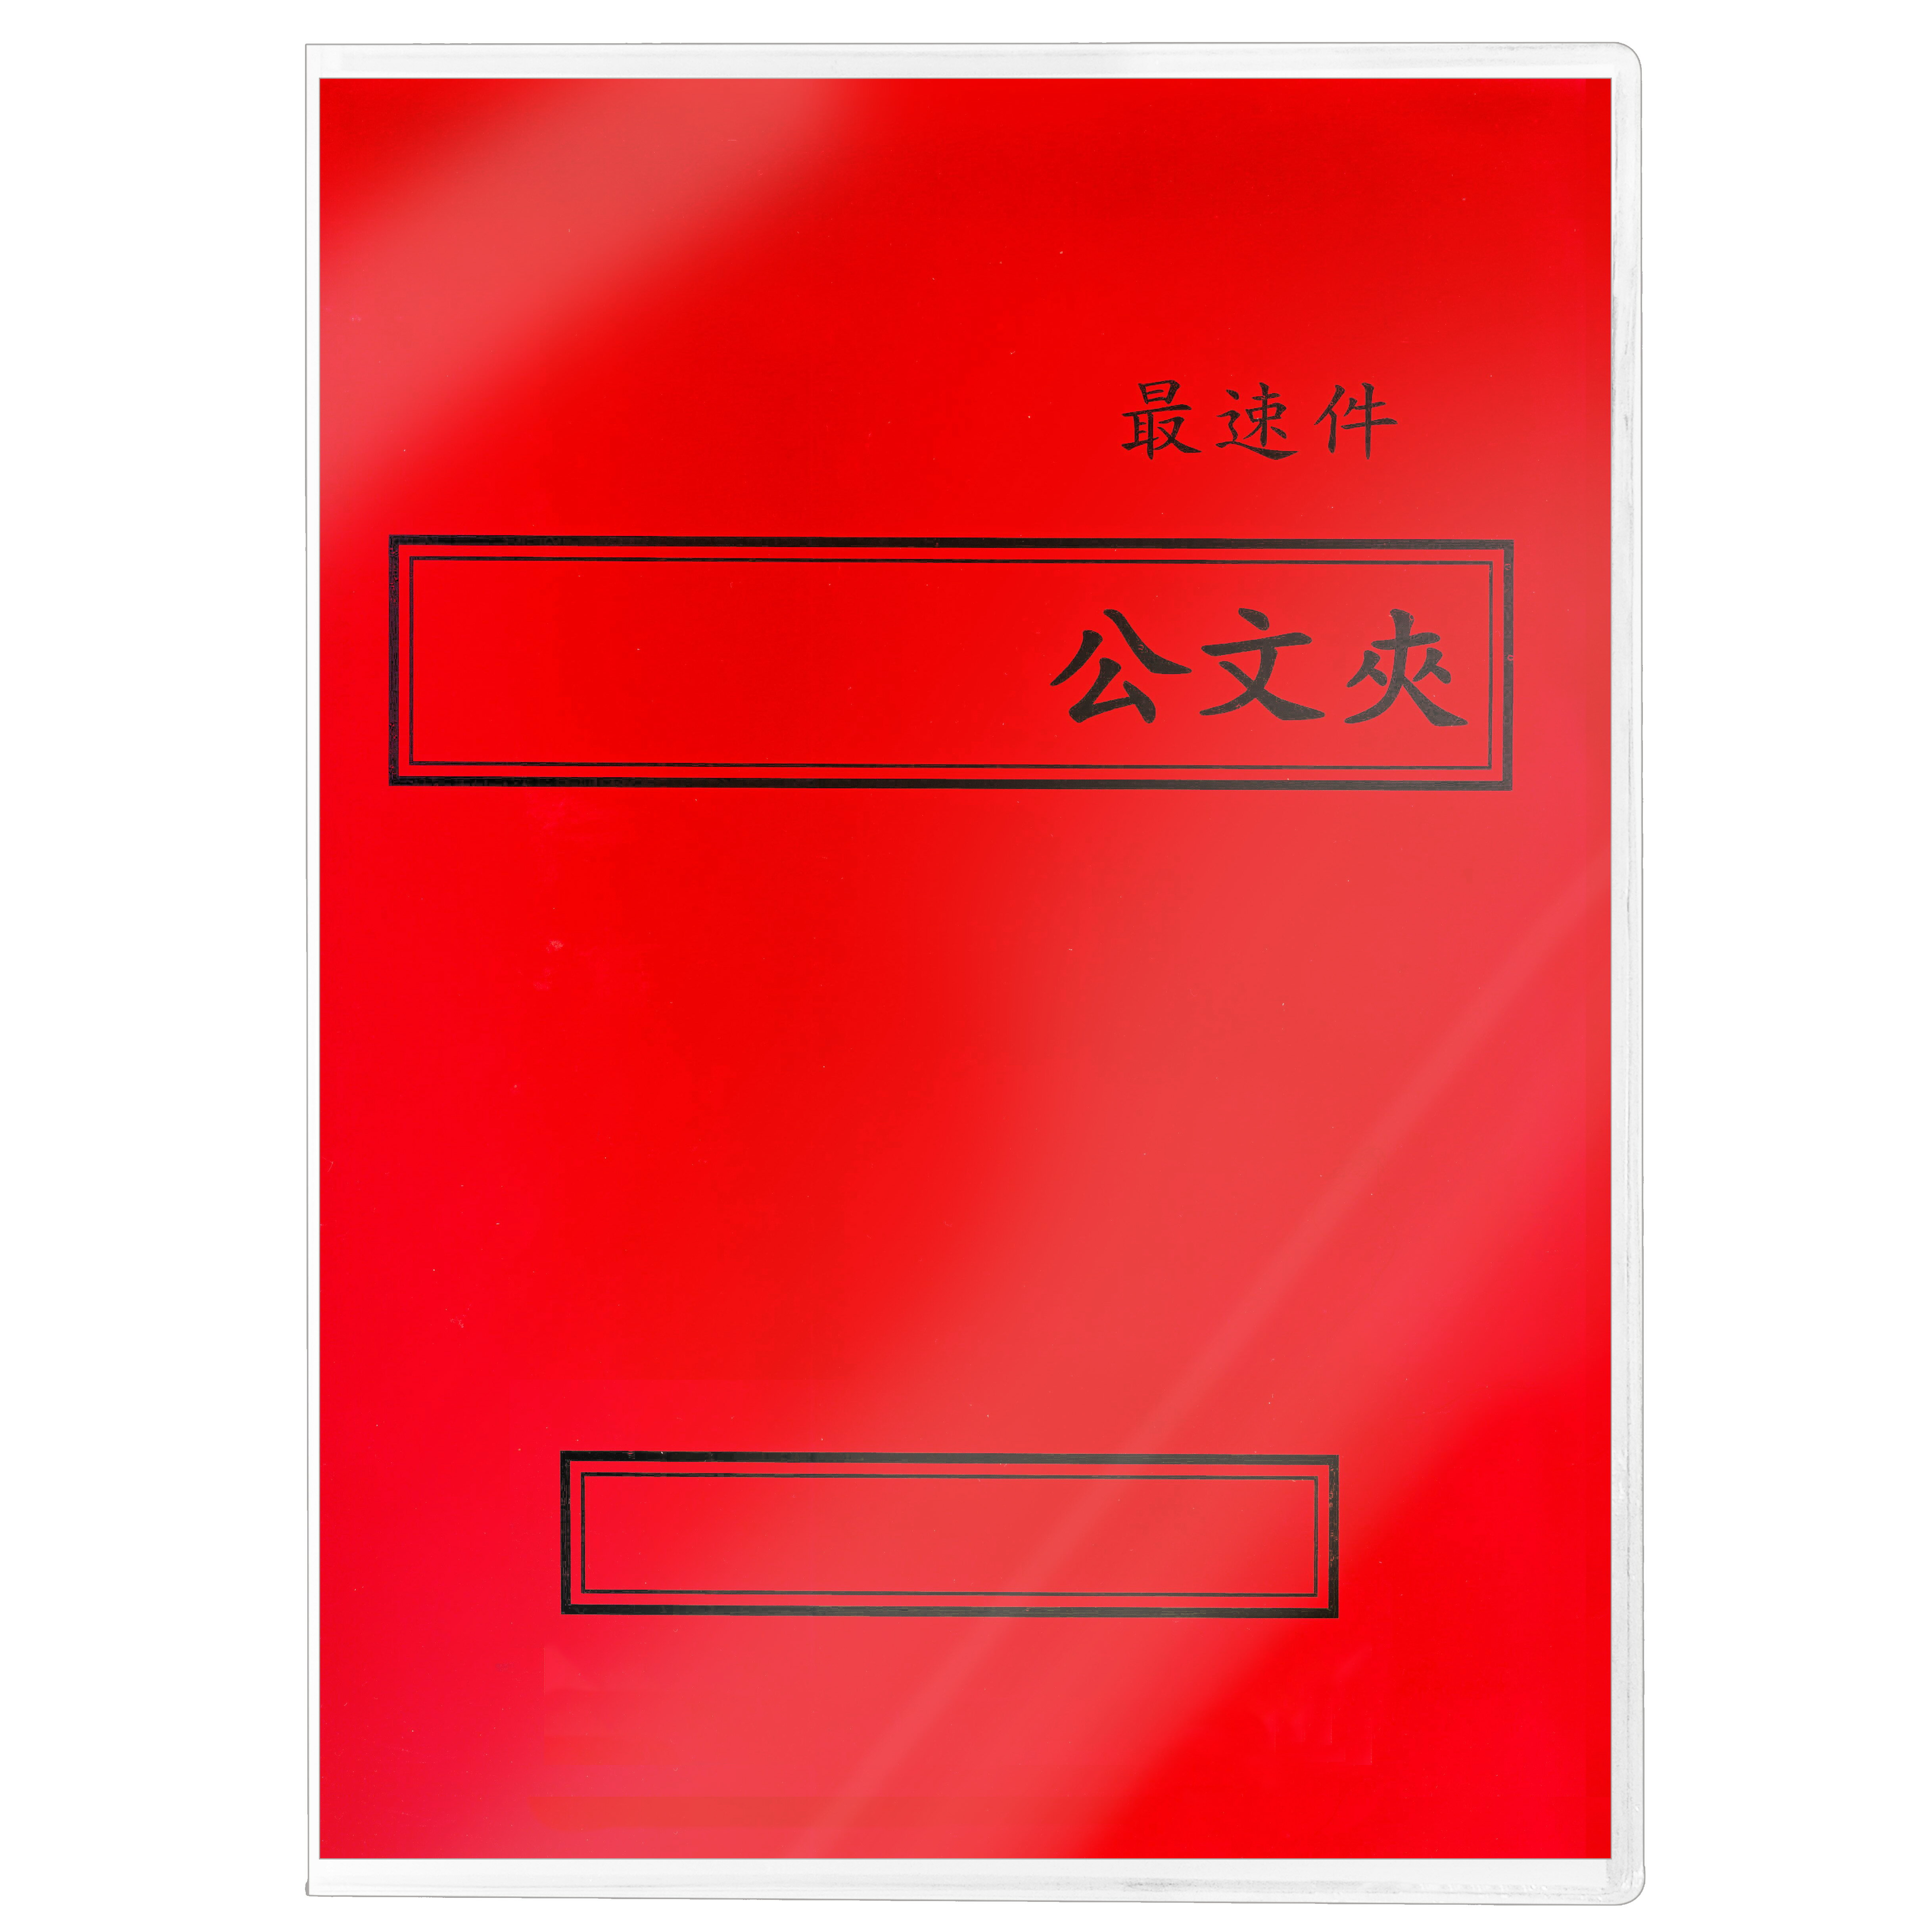 【文具通】紙質 西式 橫式 紅色 最速件 卷宗紙已折好 並已套上保護套 整套販售 T1010064